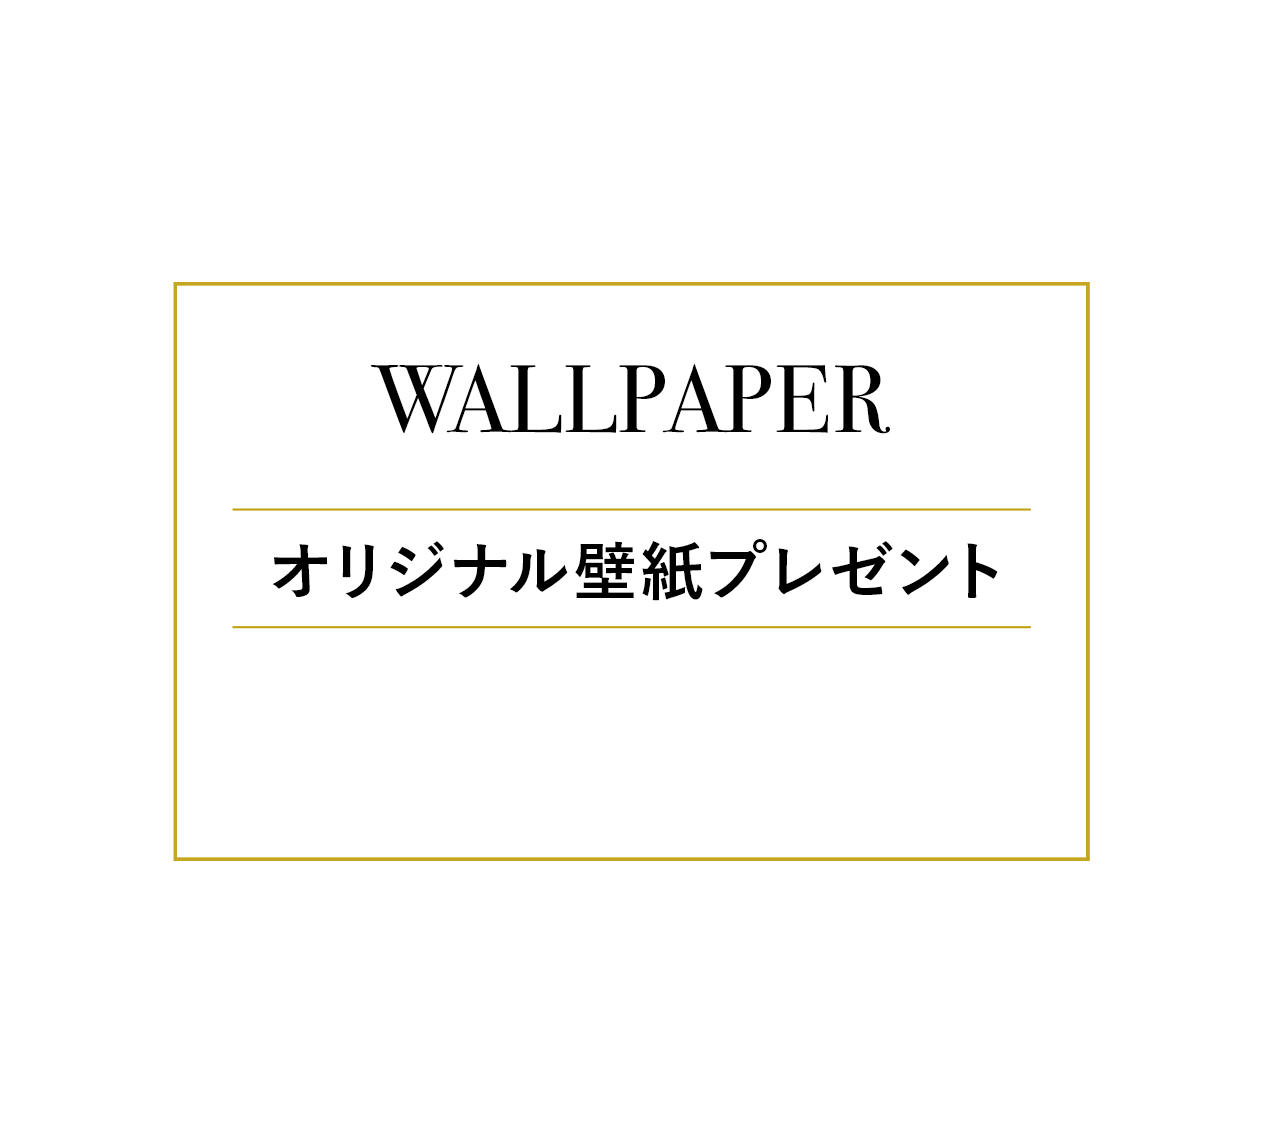 WALLPAPER オリジナル壁紙プレゼント